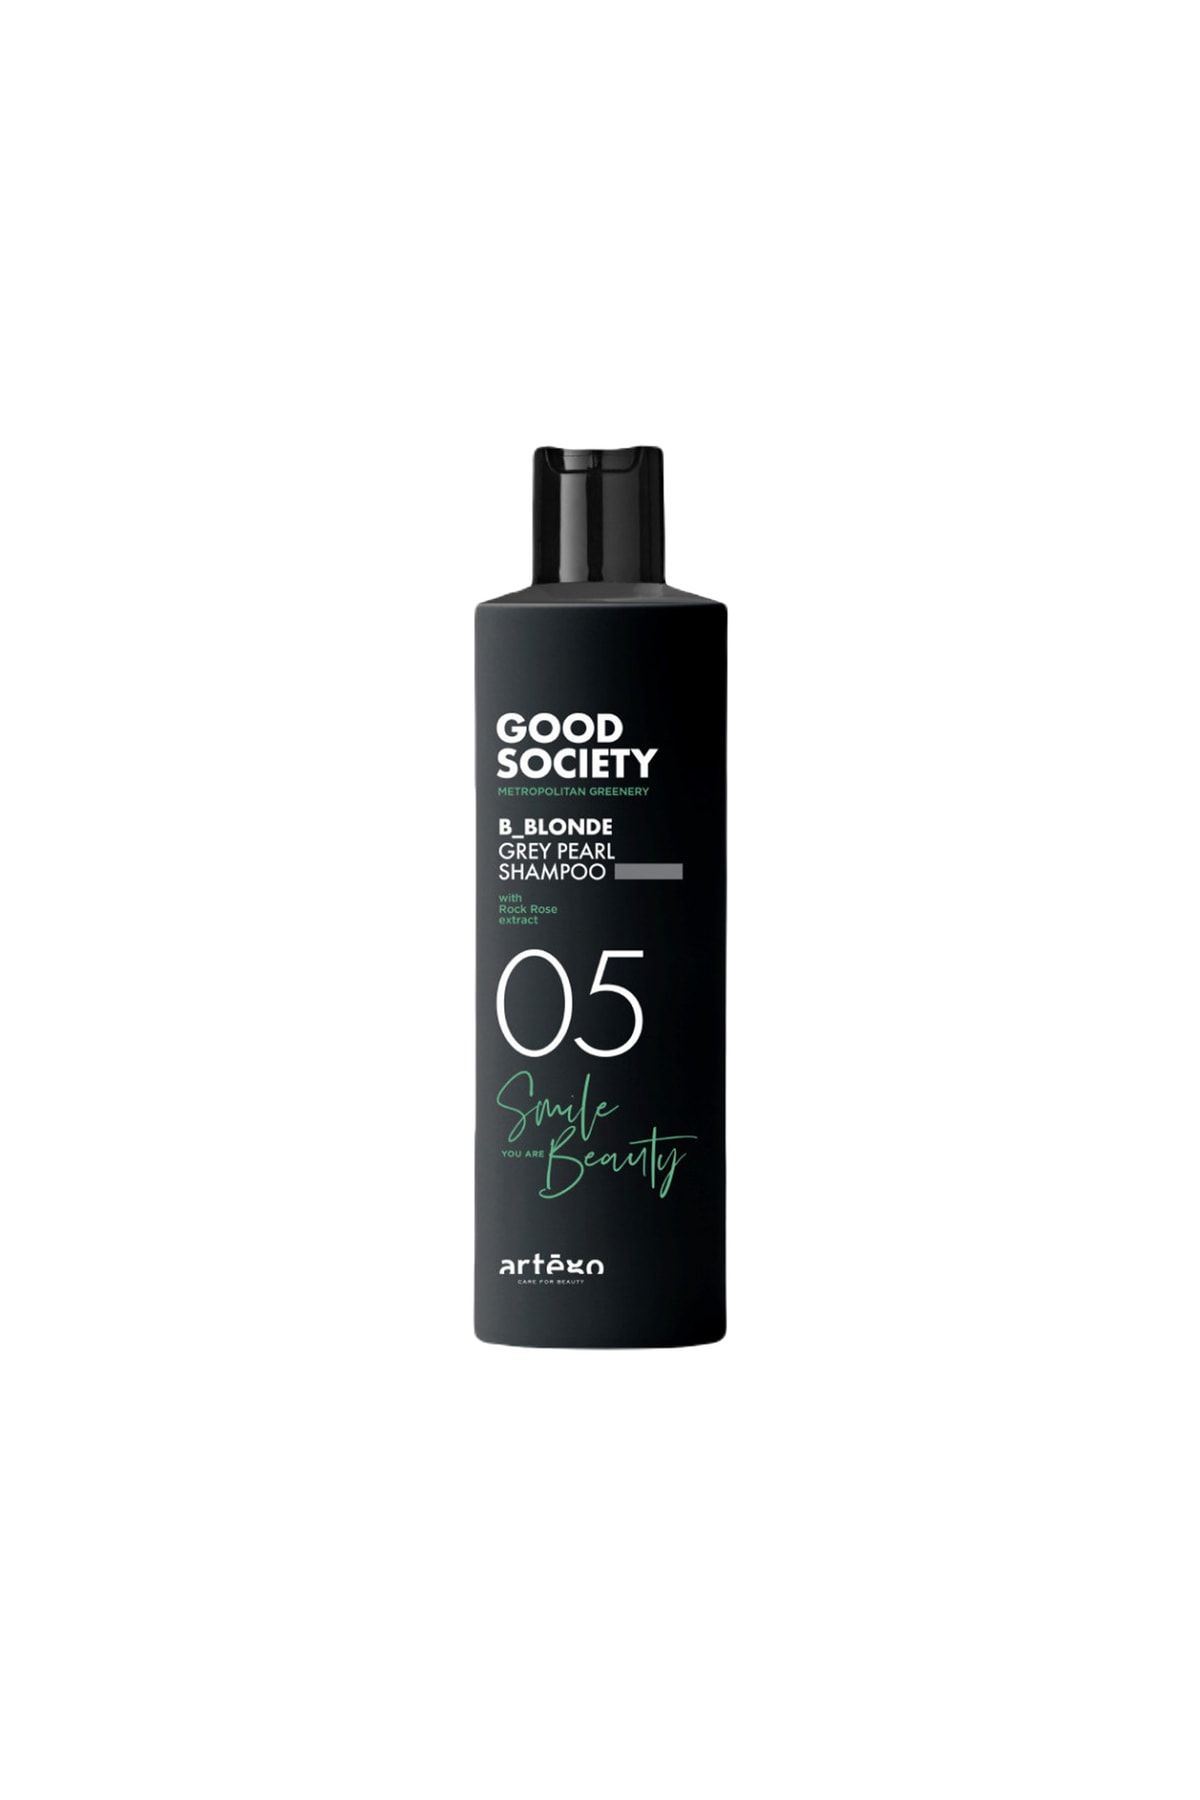 Artego Good Society 05 B_blonde Grey Pearl Shampoo 250 Ml